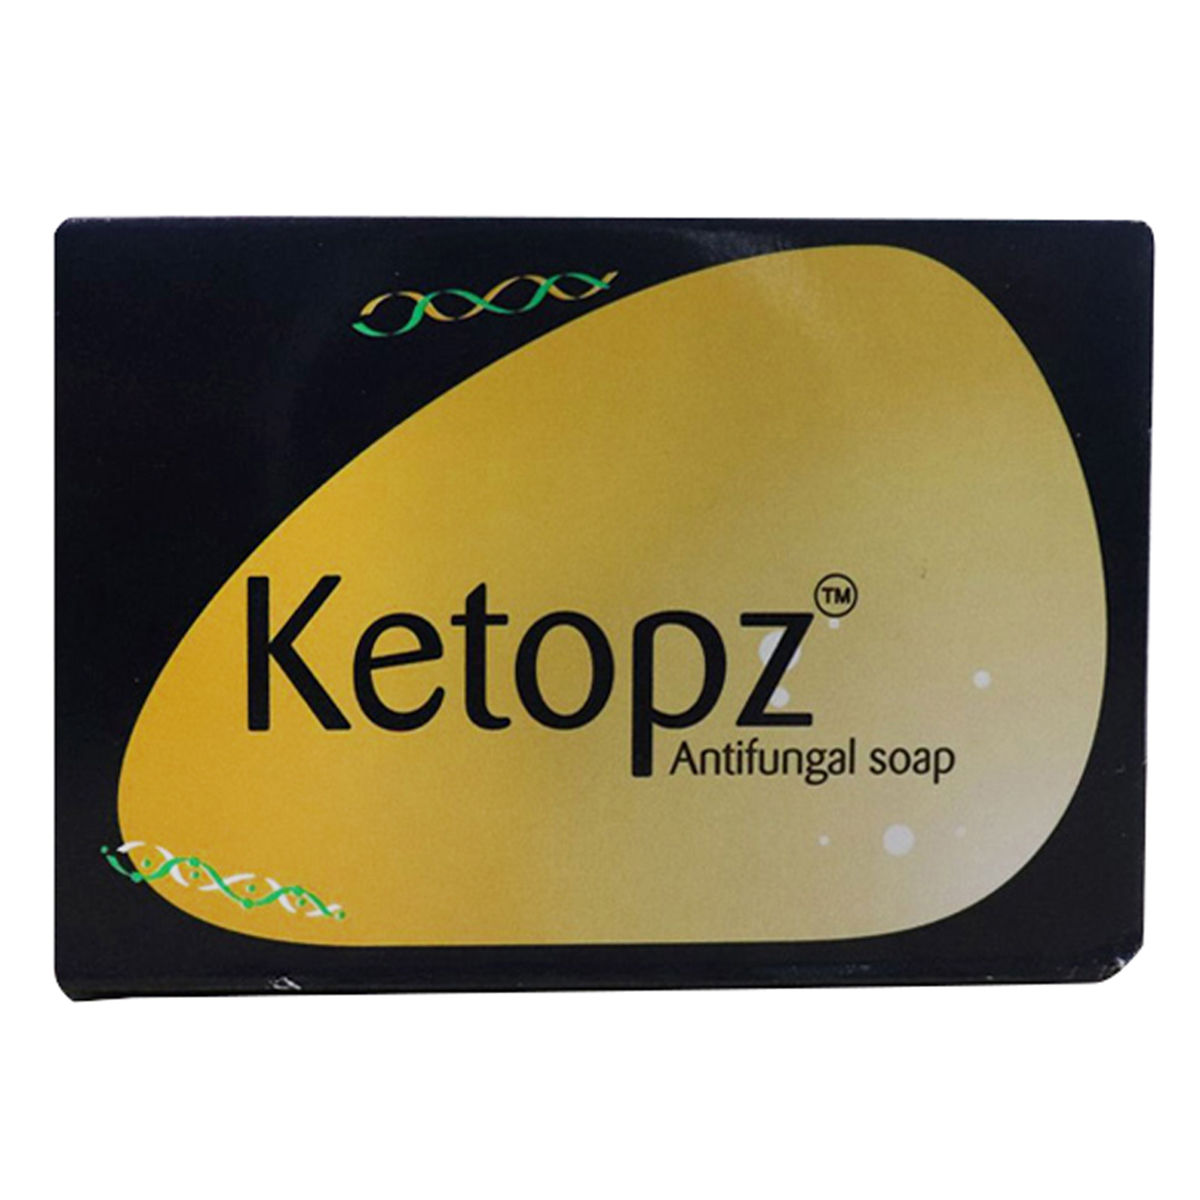 Buy Ketopz Soap, 75 gm Online